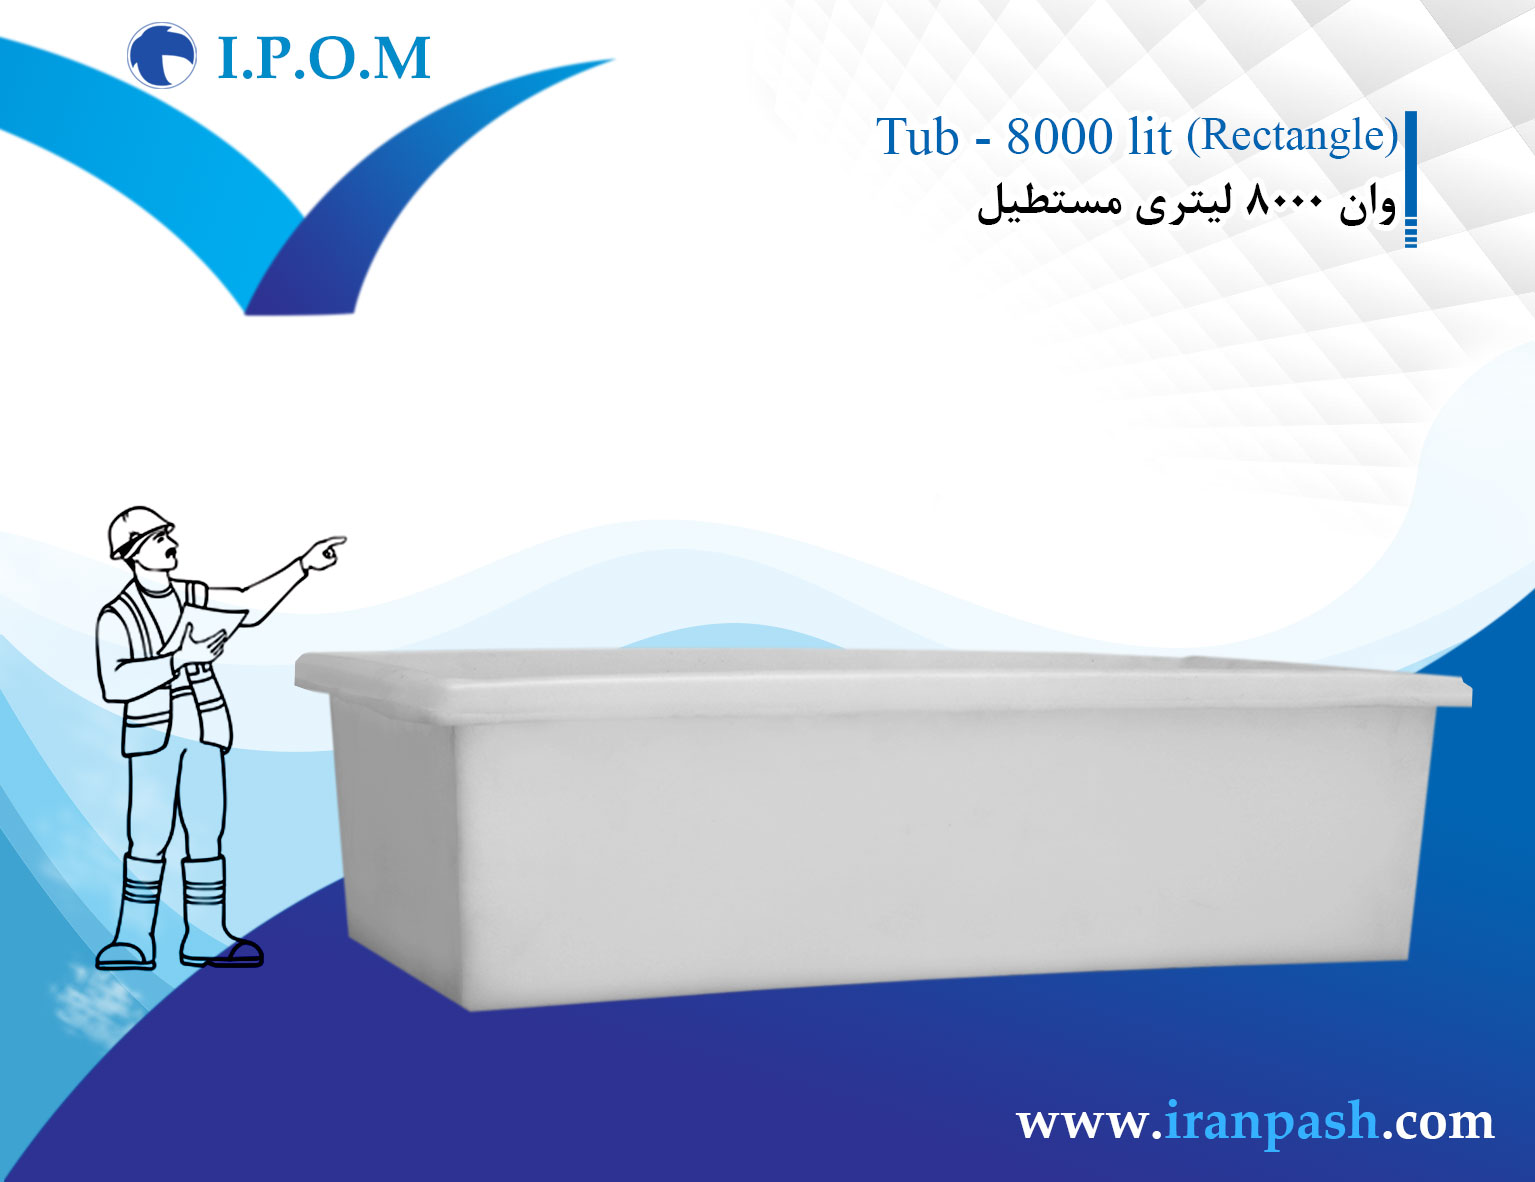 8000 liter rectangular tub